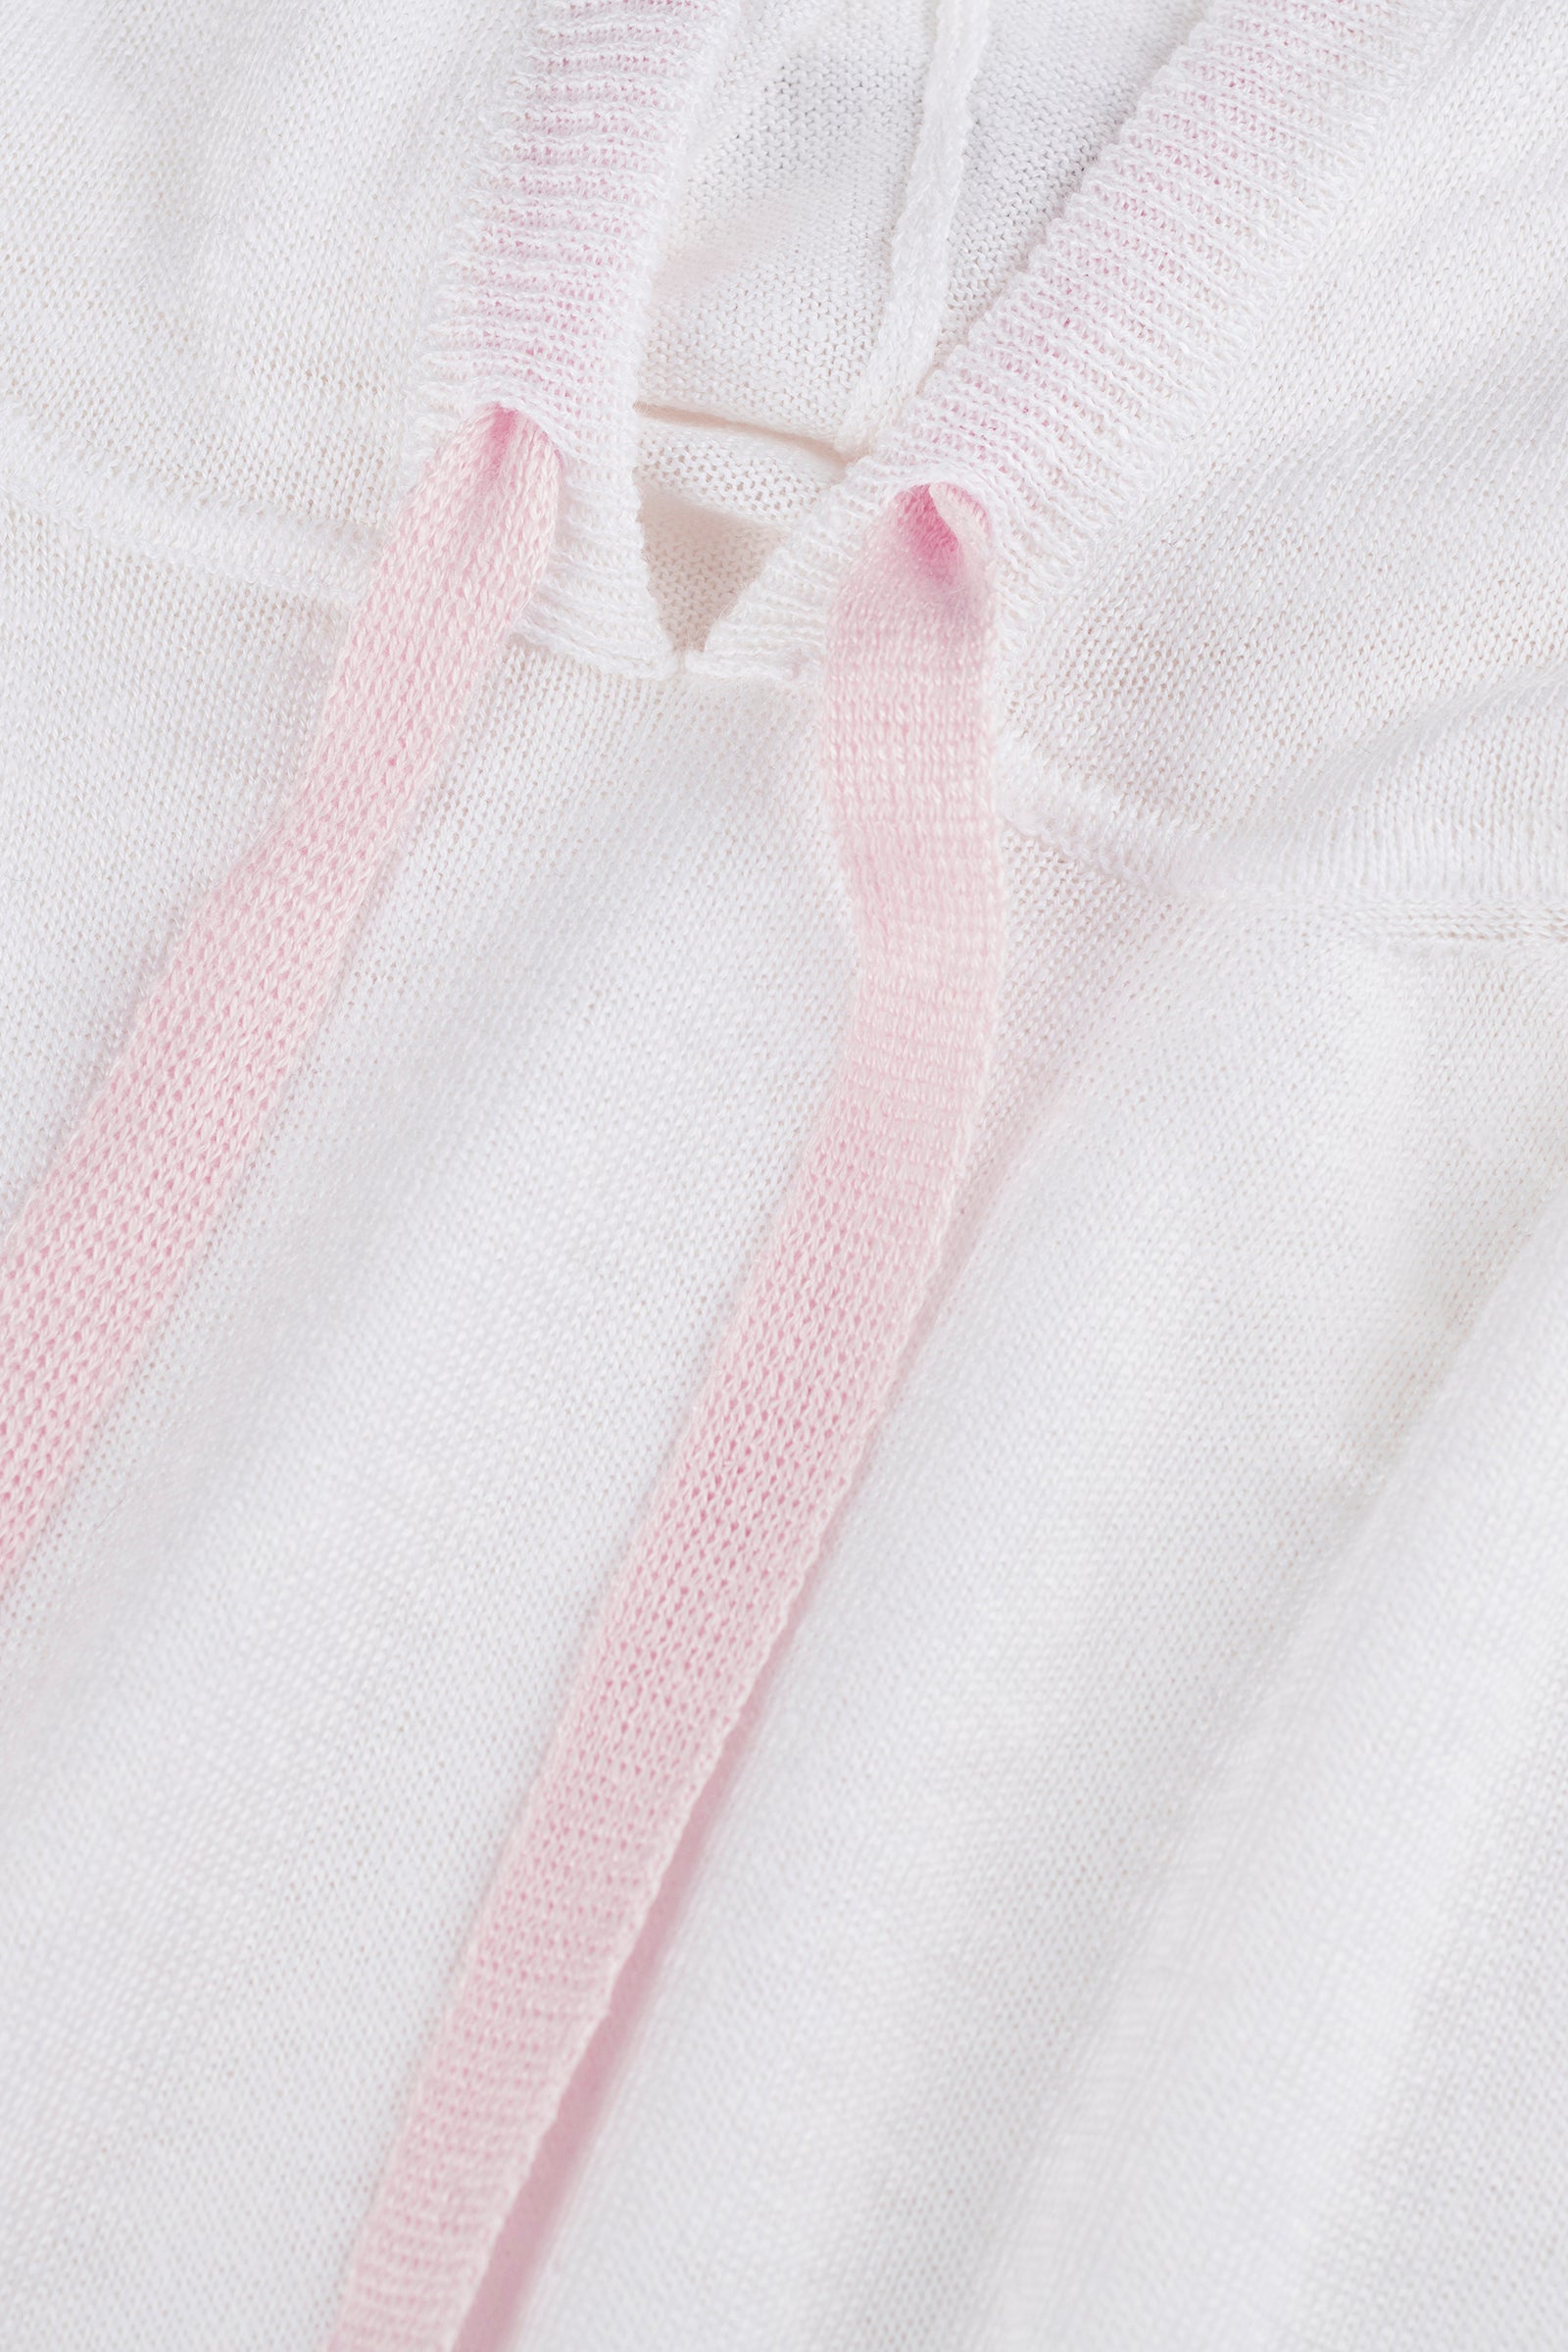 Polo Dubai 100% Capri white and pink linen polo detail